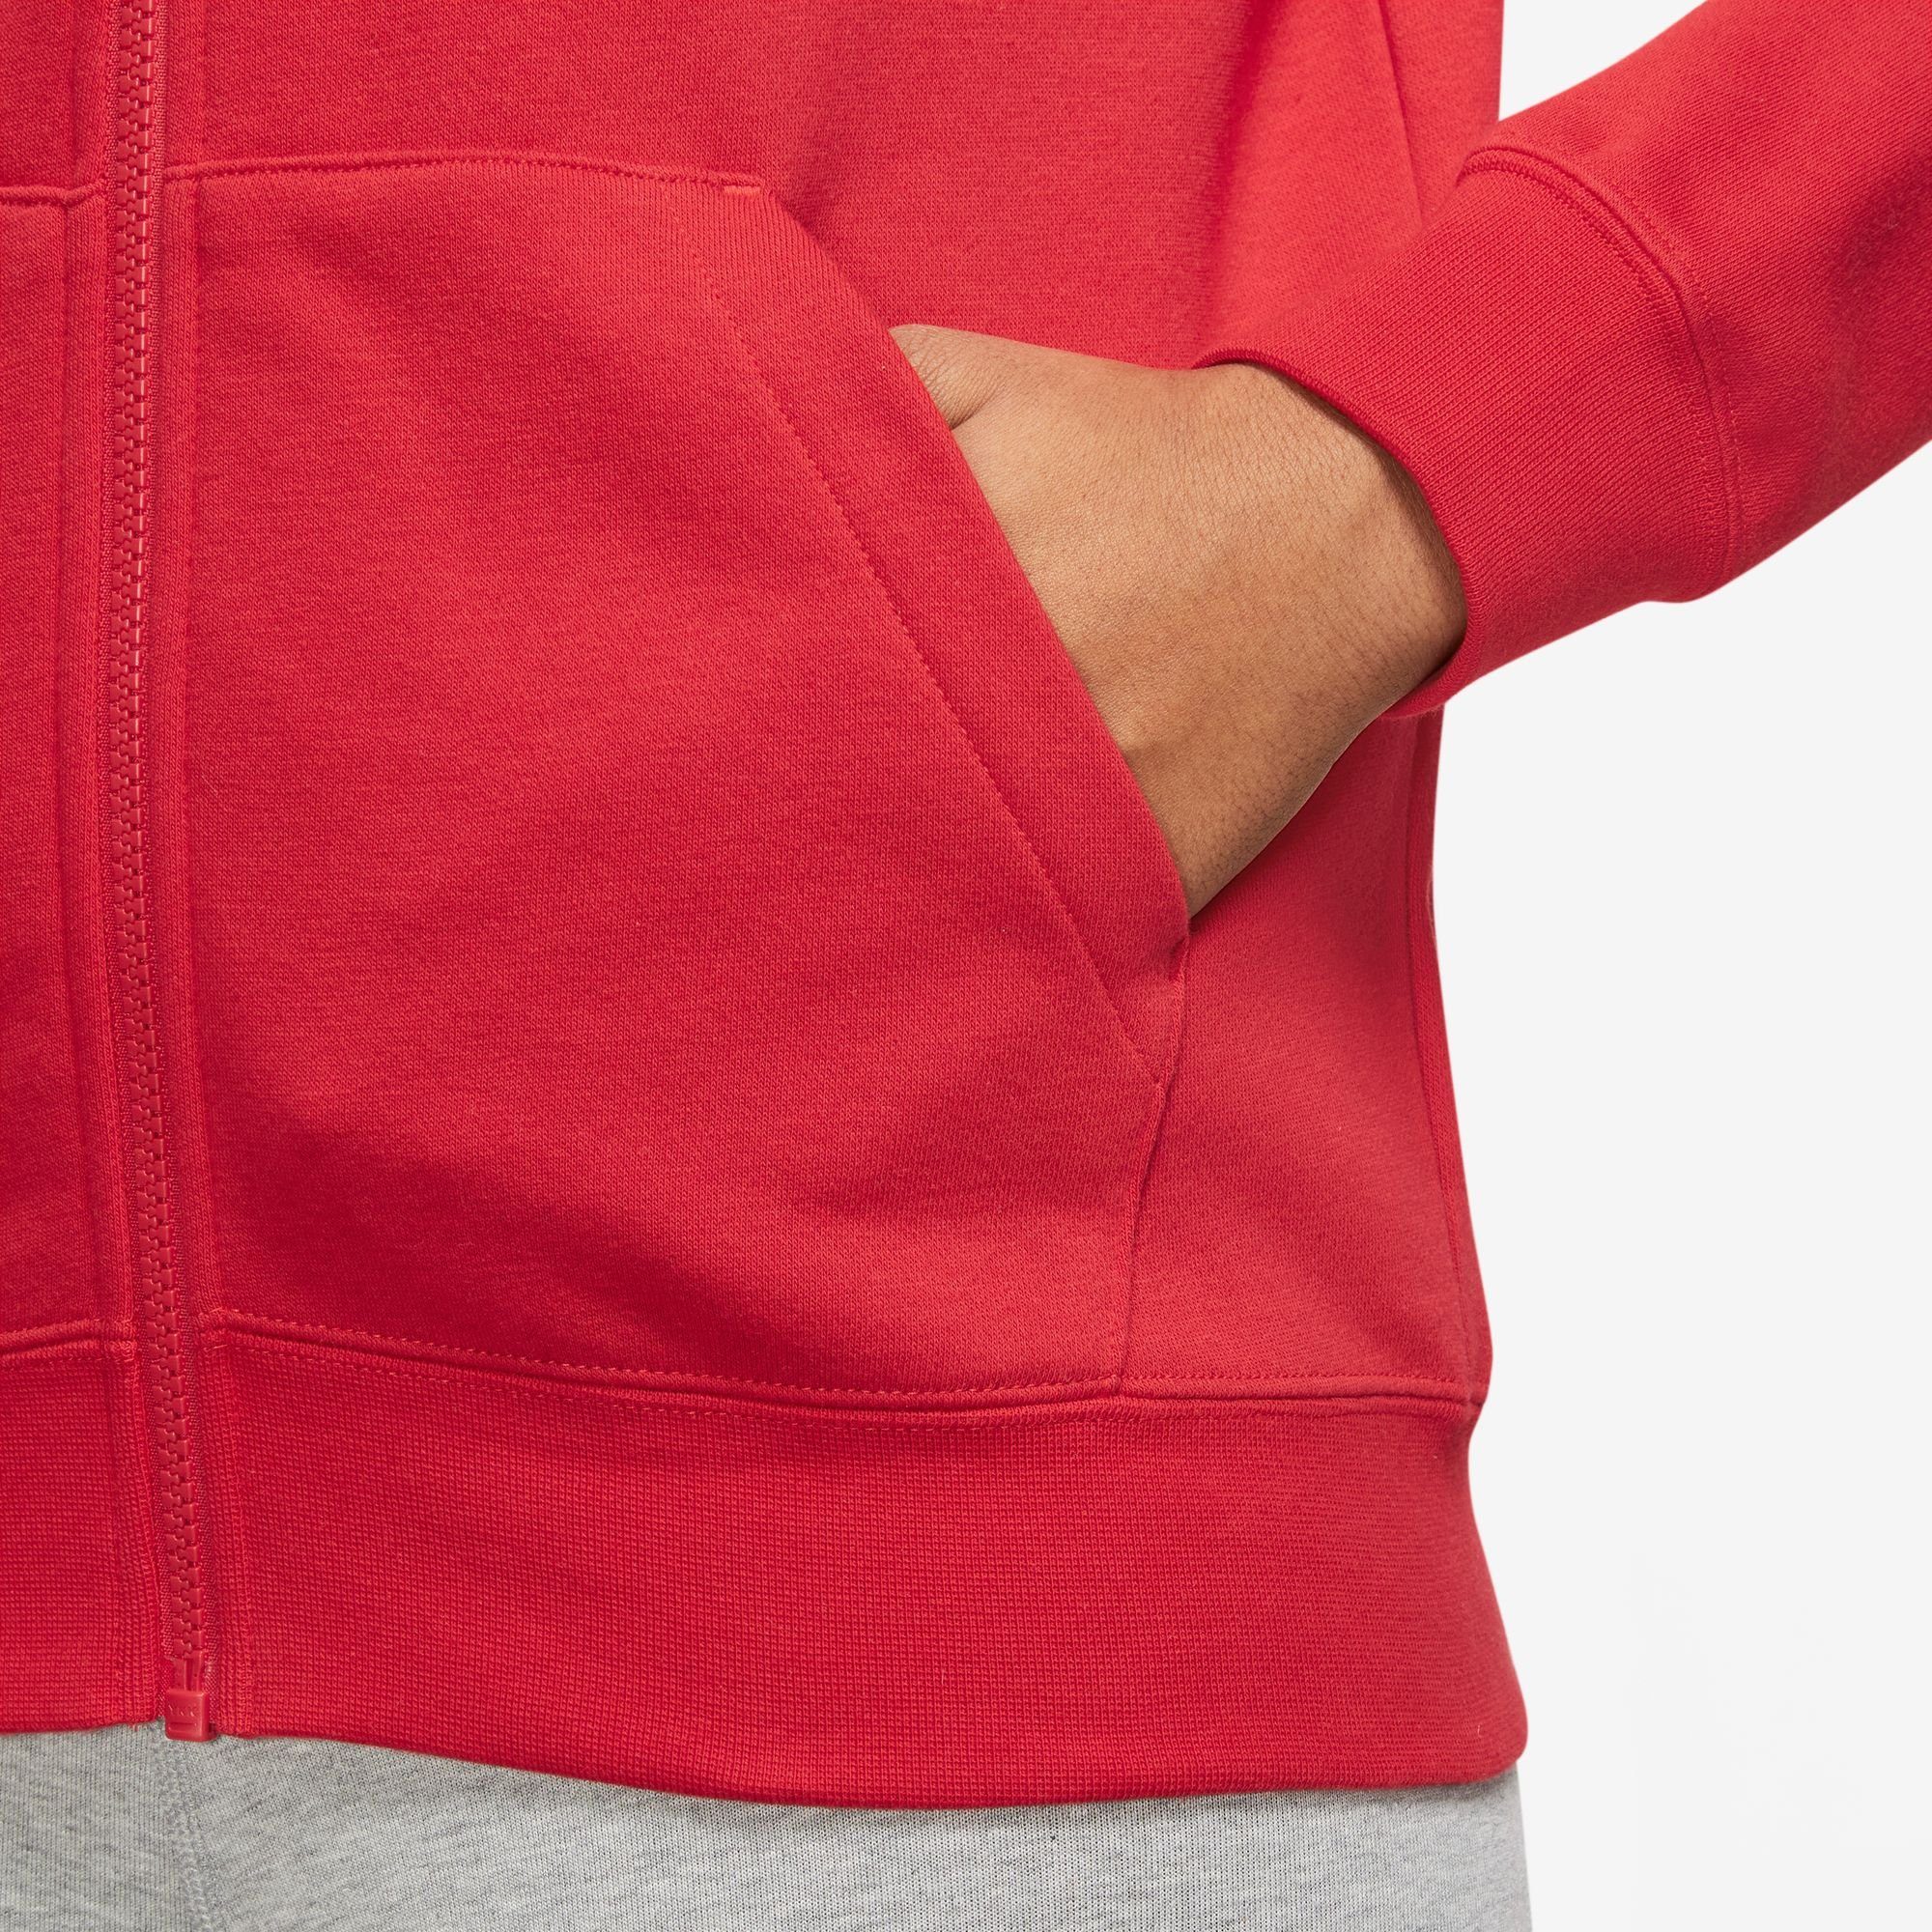 Club Kapuzensweatjacke Hoodie Fleece UNIVERSITY Full-Zip Nike RED/WHITE Women's Sportswear